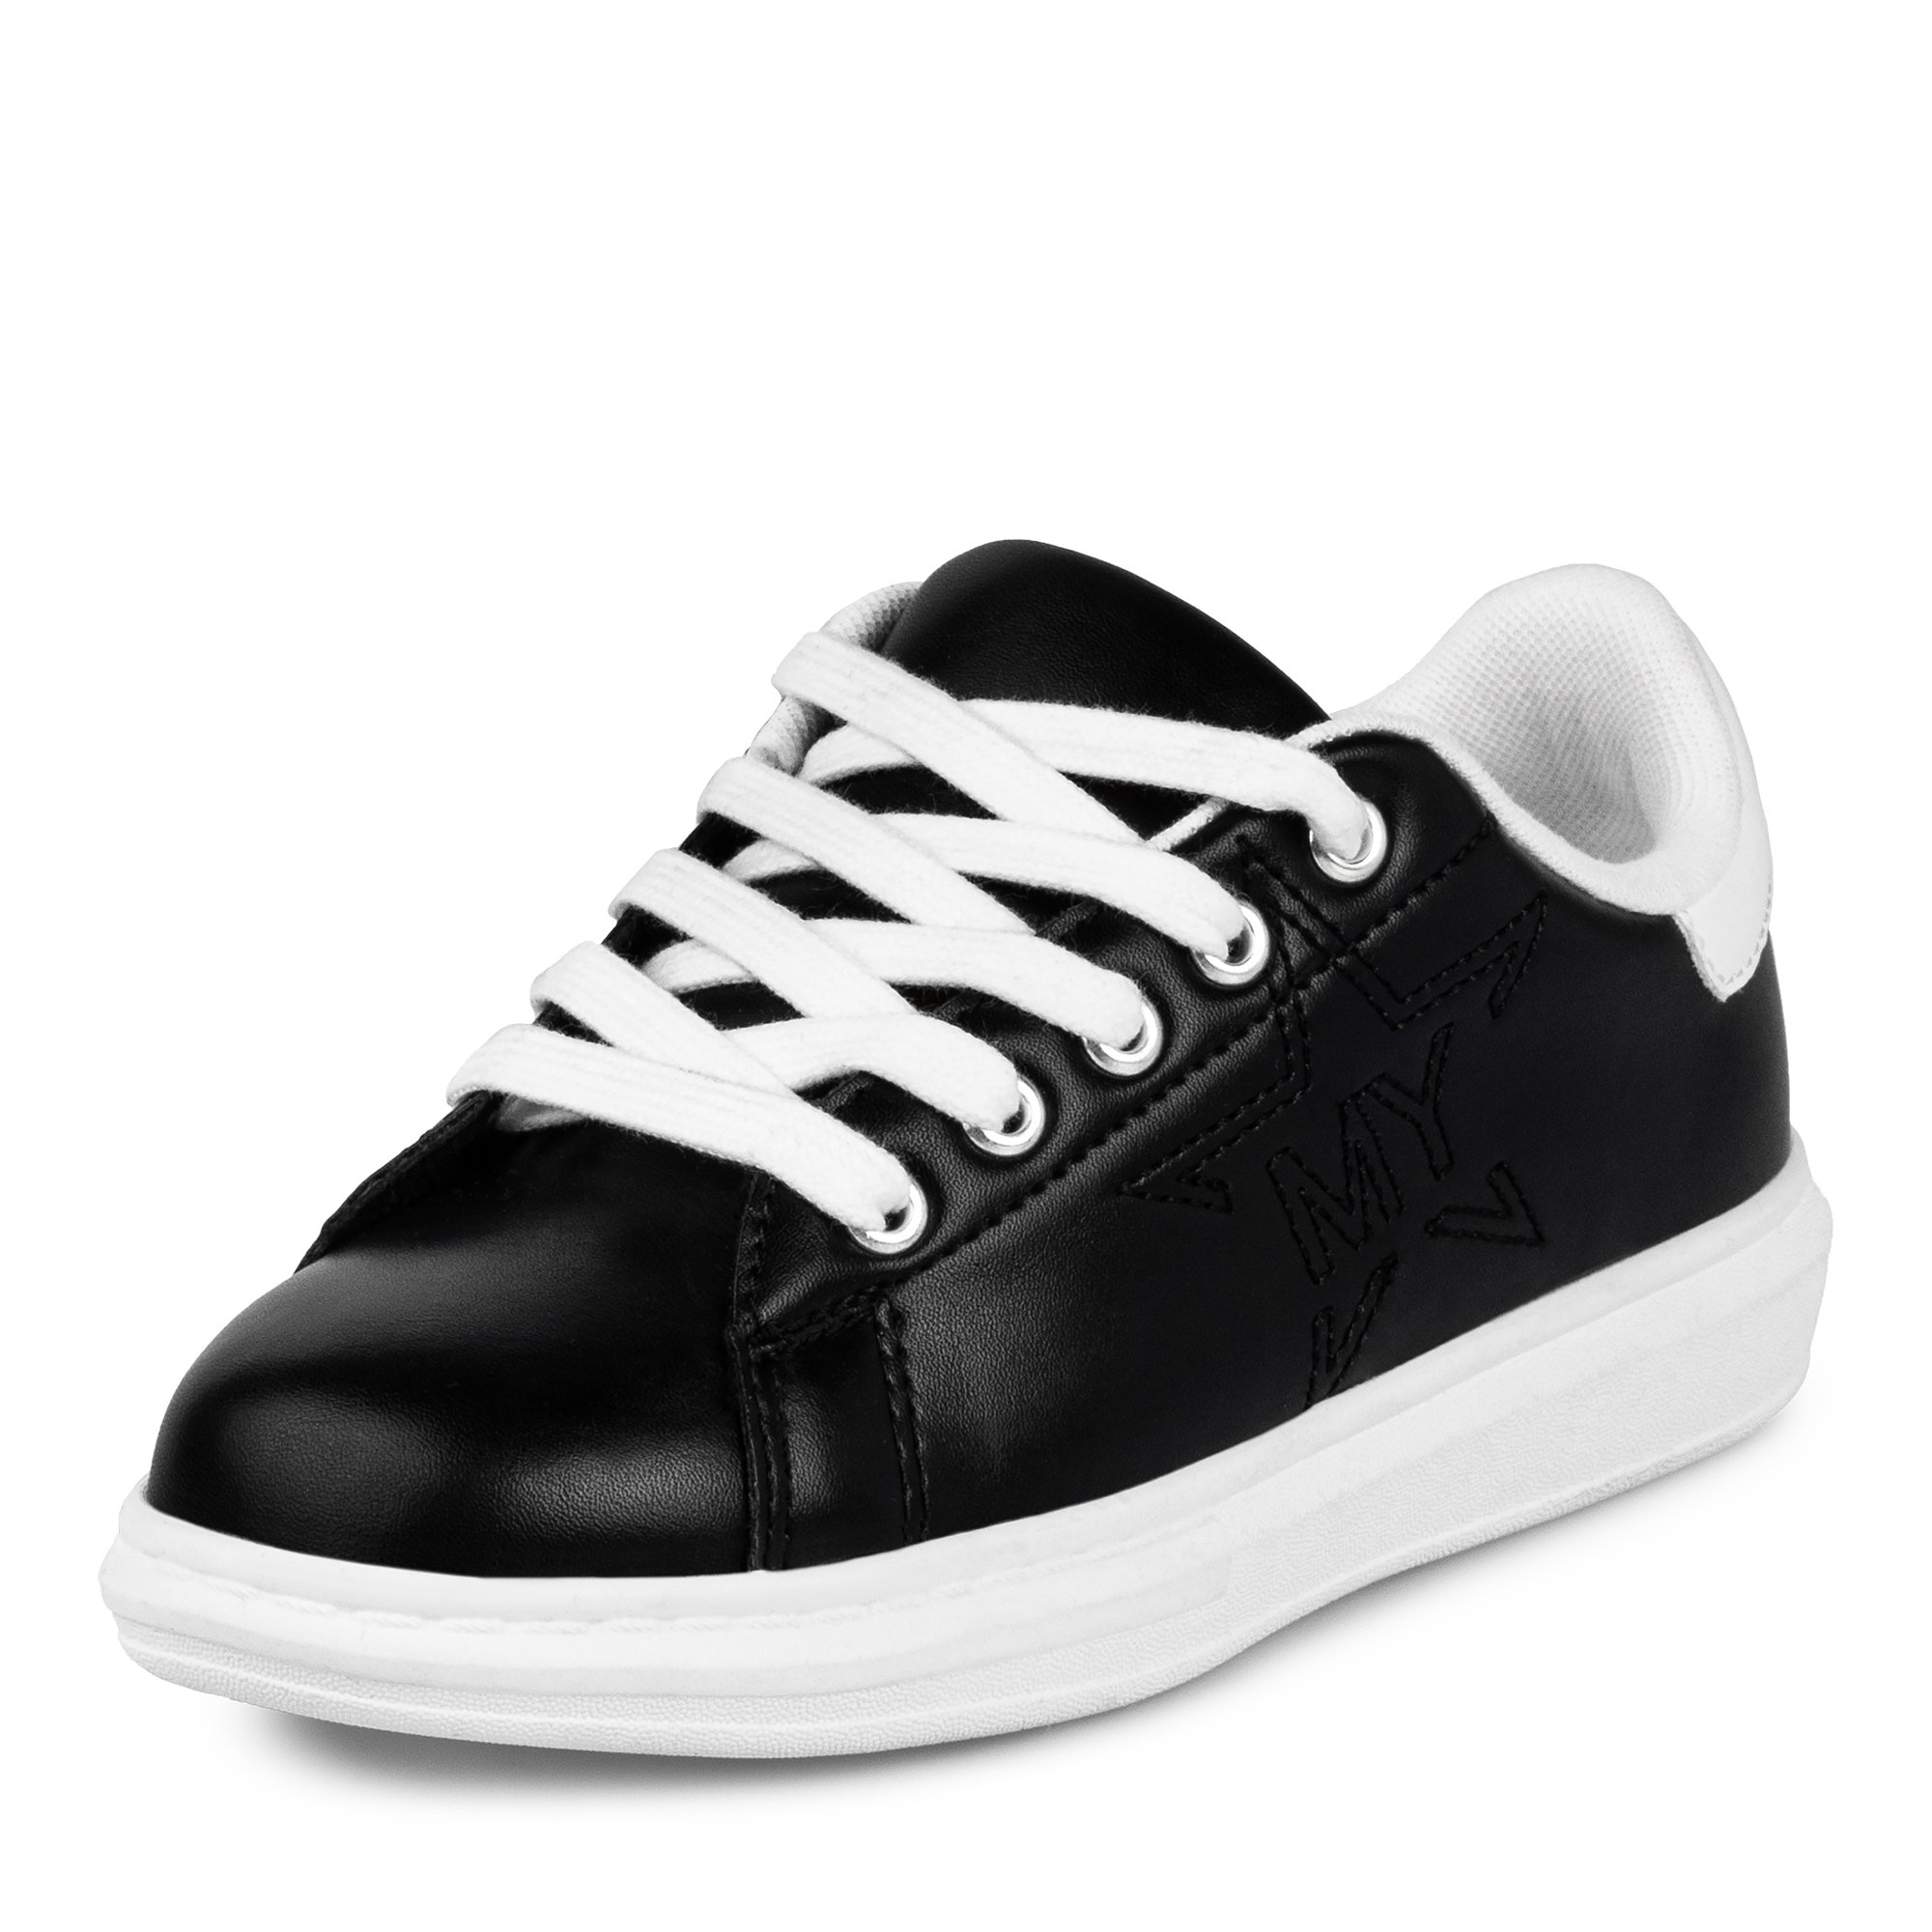 Обувь для девочек MUNZ YOUNG 117-015A-2602, цвет черный, размер 33 - фото 2